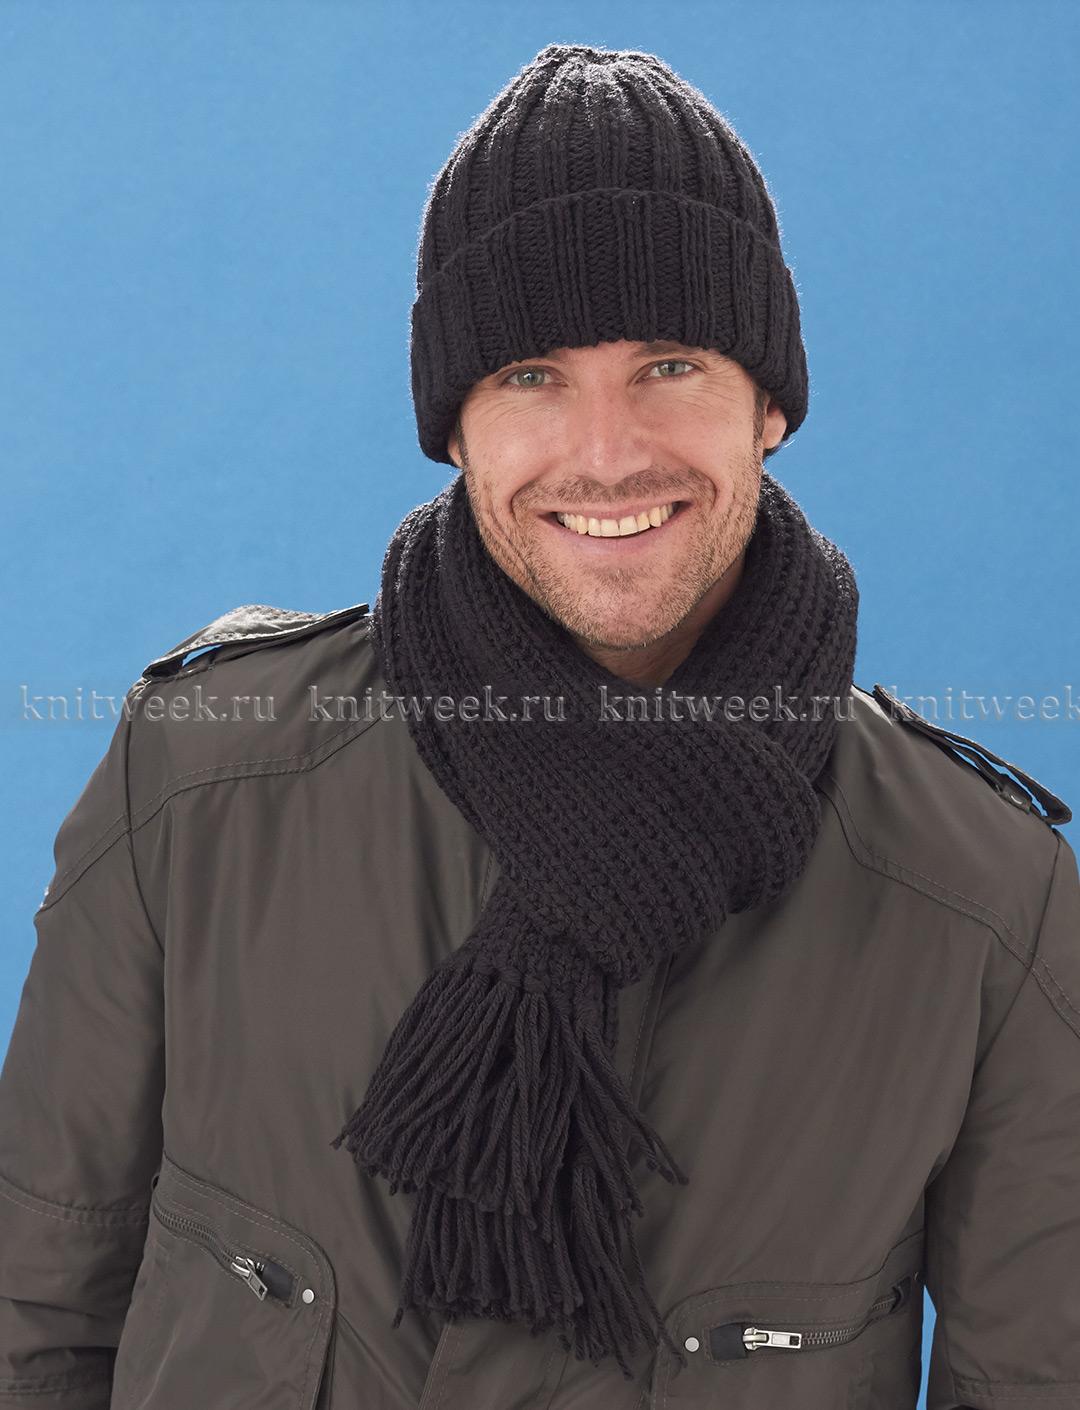 Вязание мужского шарфа спицами, подборка схем и описаний